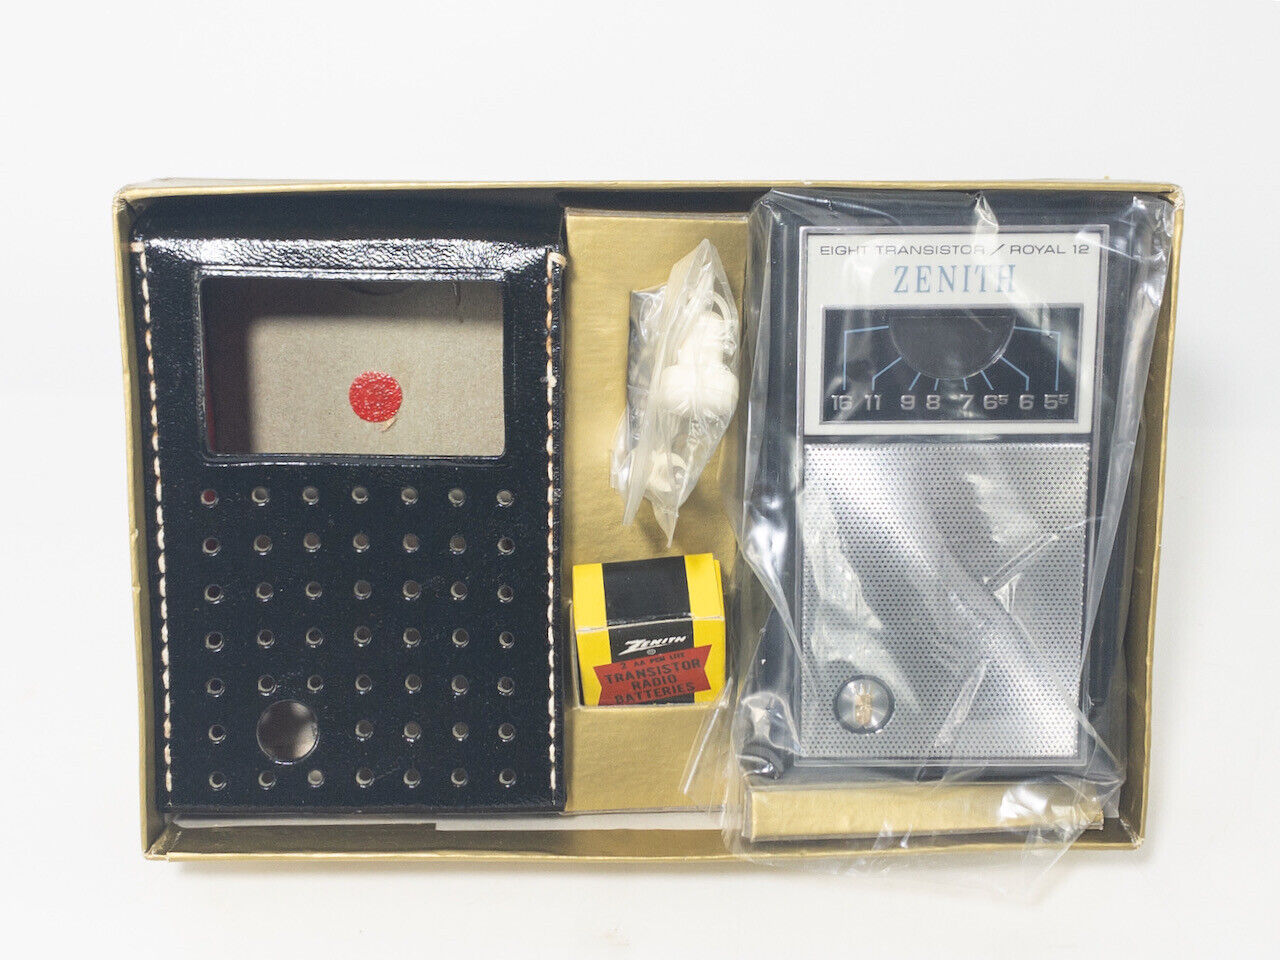 Zenith 8 Transistor Royal 12 AM Radio w/ Box, Complete, New in Box, Unused, Rare